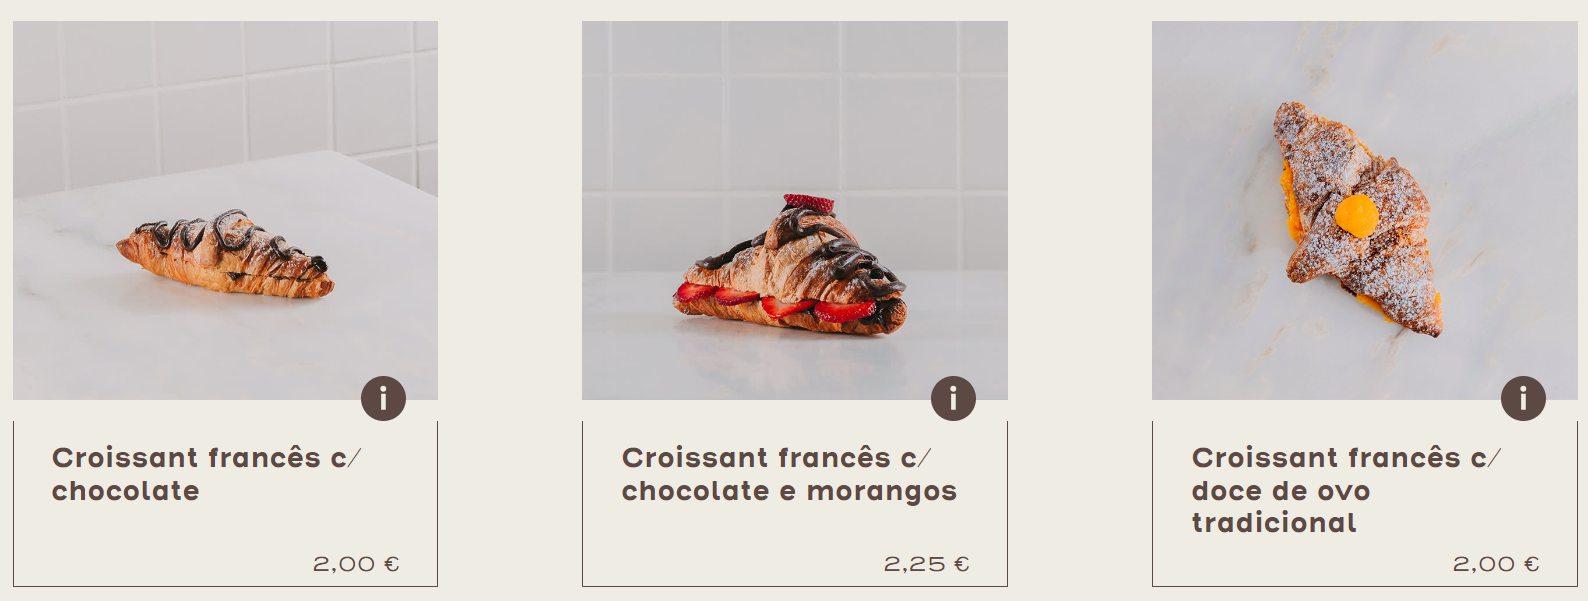 Croissant francês - A Padaria Portuguesa - BVML